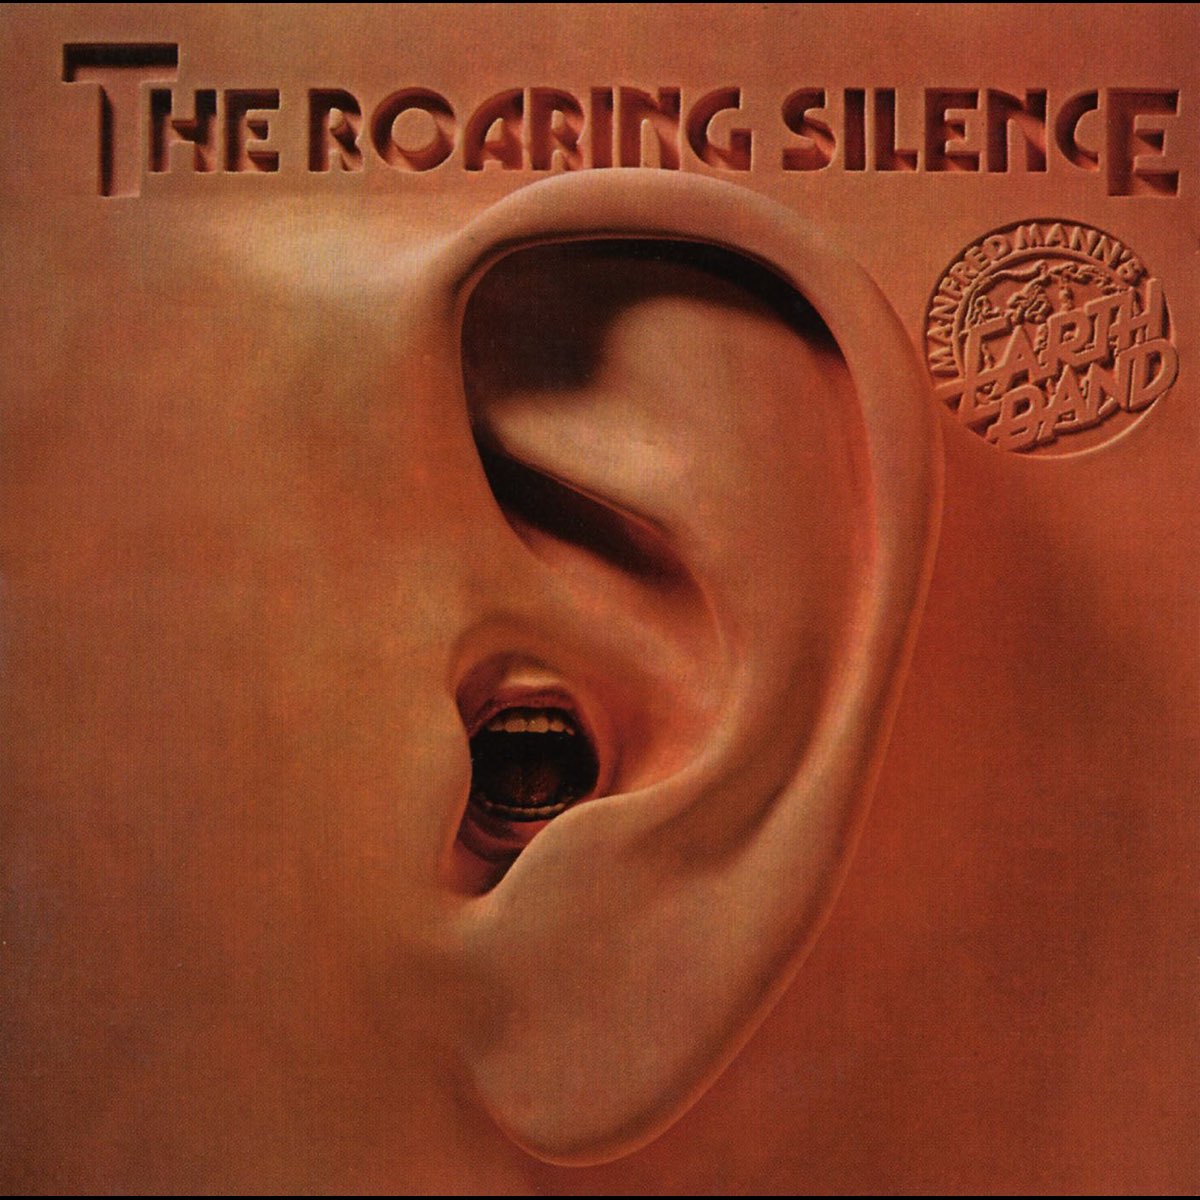 The Roaring Silence — седьмой студийный альбом британской рок-группы Manfred Mann’s Earth Band, выпущенный 27 августа 1976 года лейблом «Bronze Records» в Великобритании и лейблом «Warner Bros. Records» в США. Альбом поднялся до #10 в Billboard 200 и является самым коммерчески успешным за все время существования группы. Переиздан в 1998 году с добавлением бонус-треков: двух сингл-версий «Spirits in the Night» (композиции с предыдущего альбома «Nightingales and Bombers») с вокалом Мика Роджерса и Криса Томпсона.